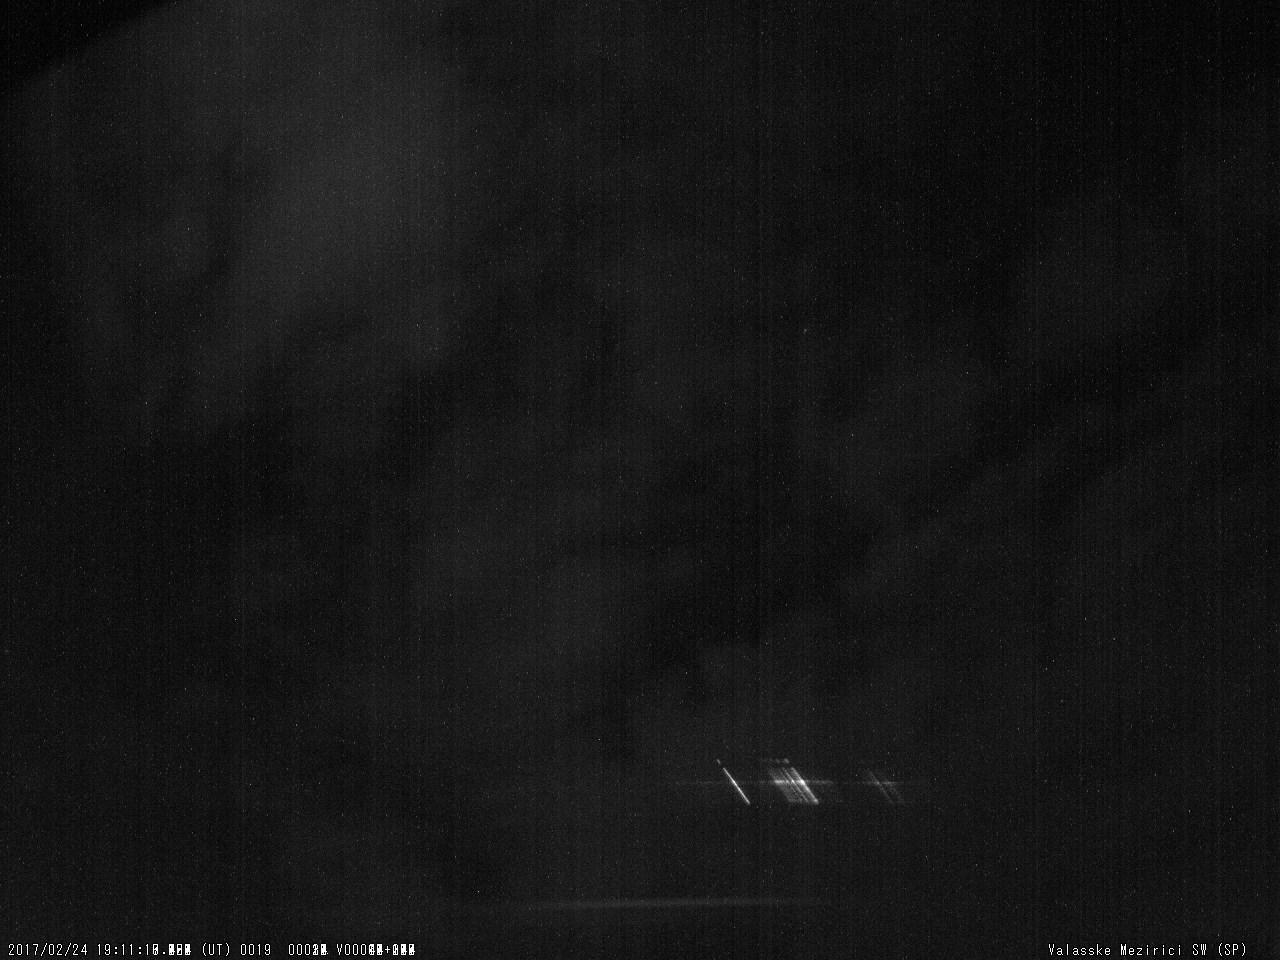 Obr. 9: Spektrum jasného meteoru 20170224_191117, spektrograf SPNE. Autor: Hvězdárna Valašské Meziříčí